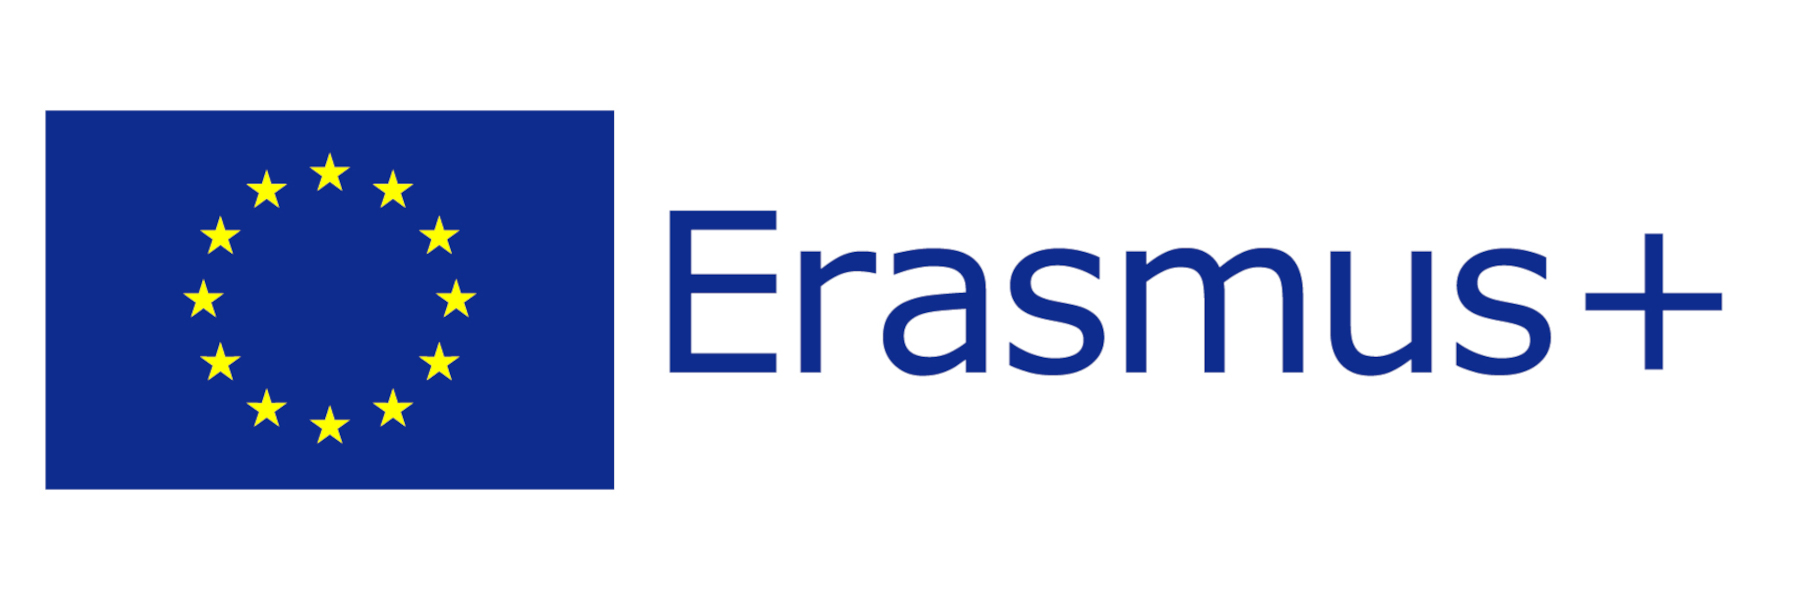 Acreditación Erasmus+ descripción del artículo